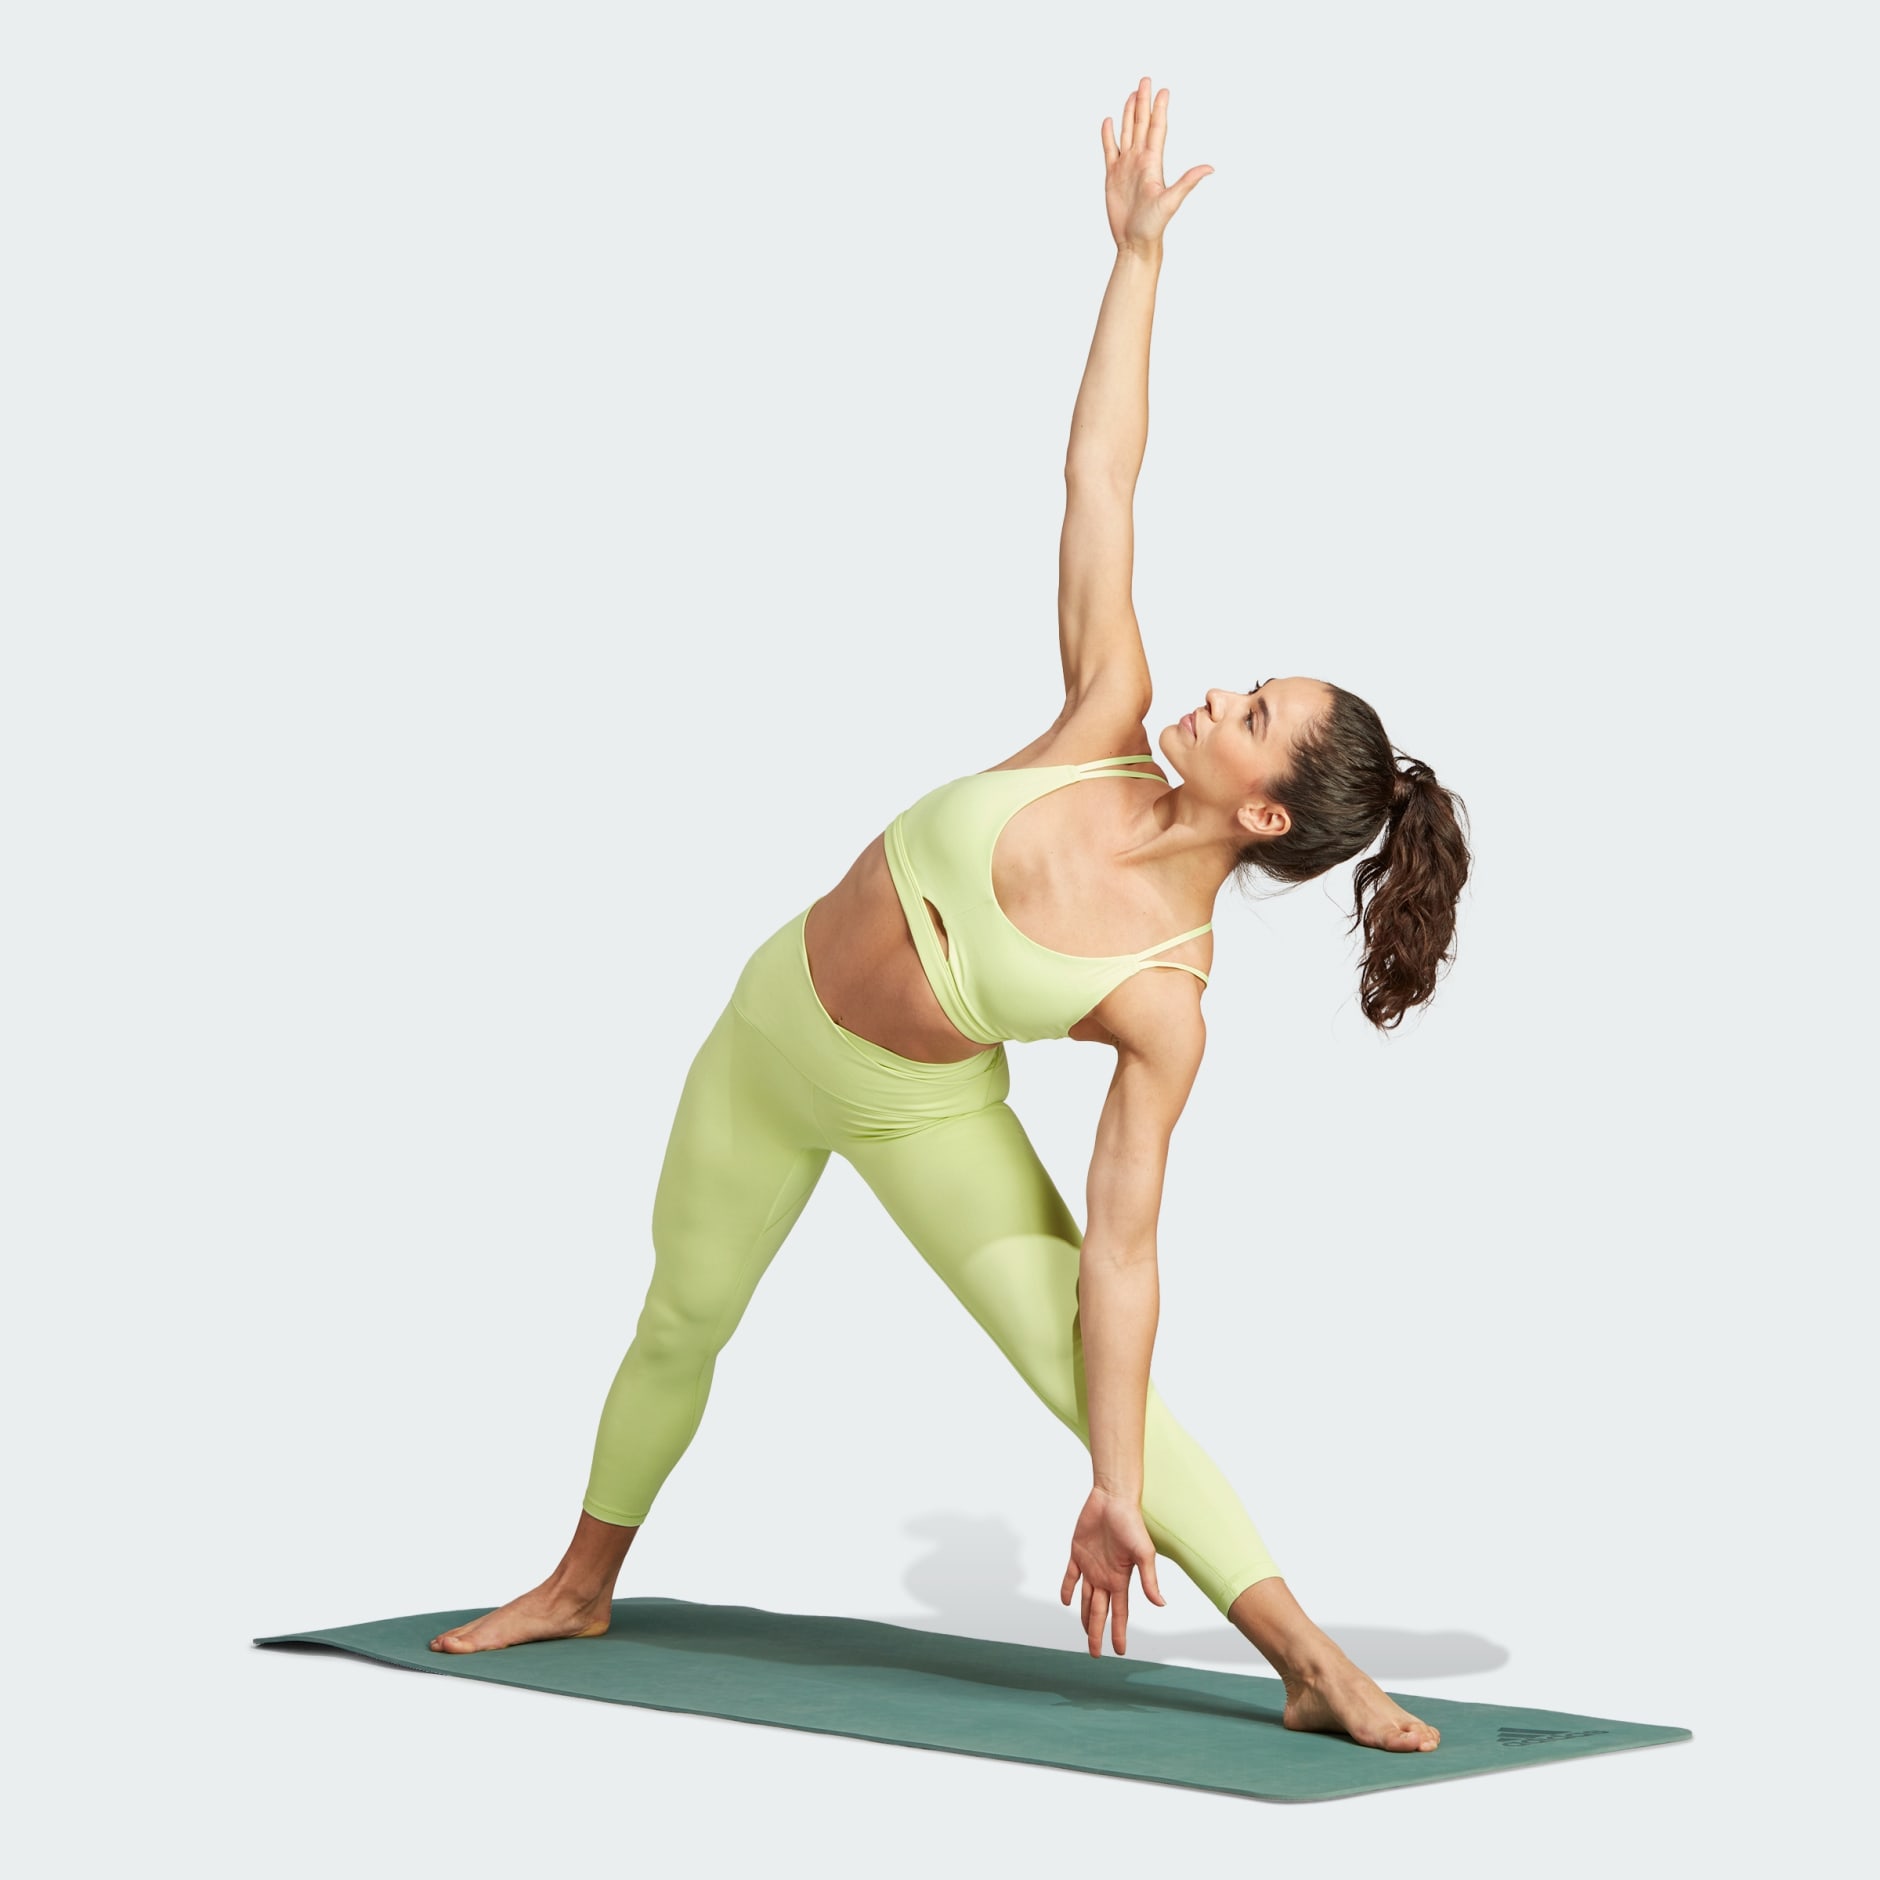 adidas Yoga Studio Luxe 7/8 Training Leggings - Black